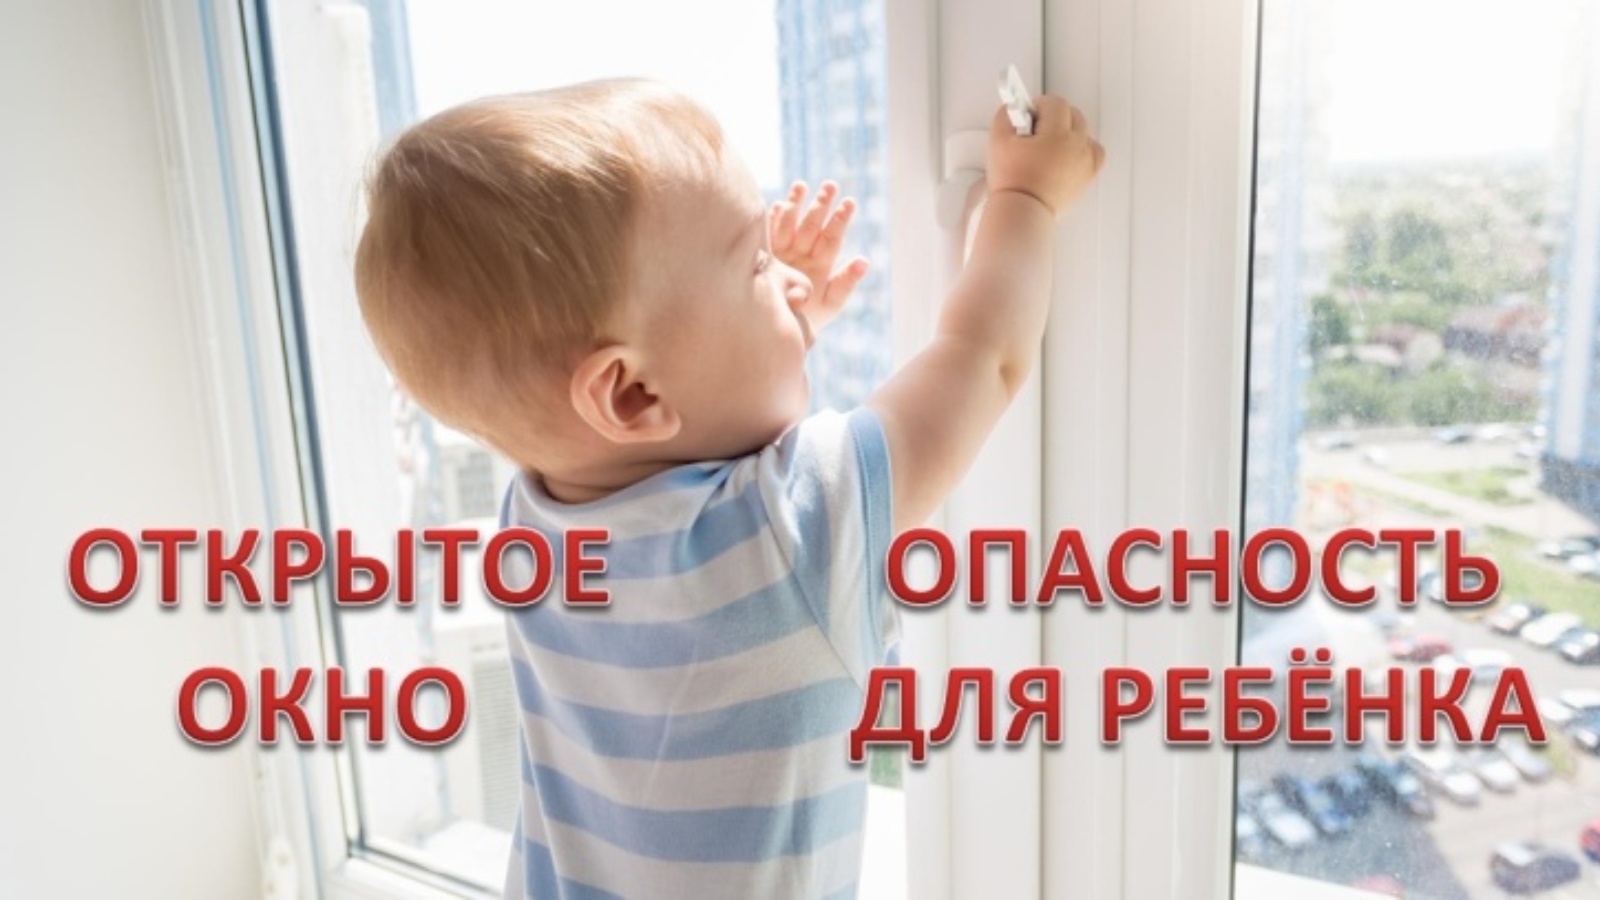 Безопасные окна для детей. Открытое окно опасность для ребенка. Открытые окна опасность для детей. Безопасные окна.